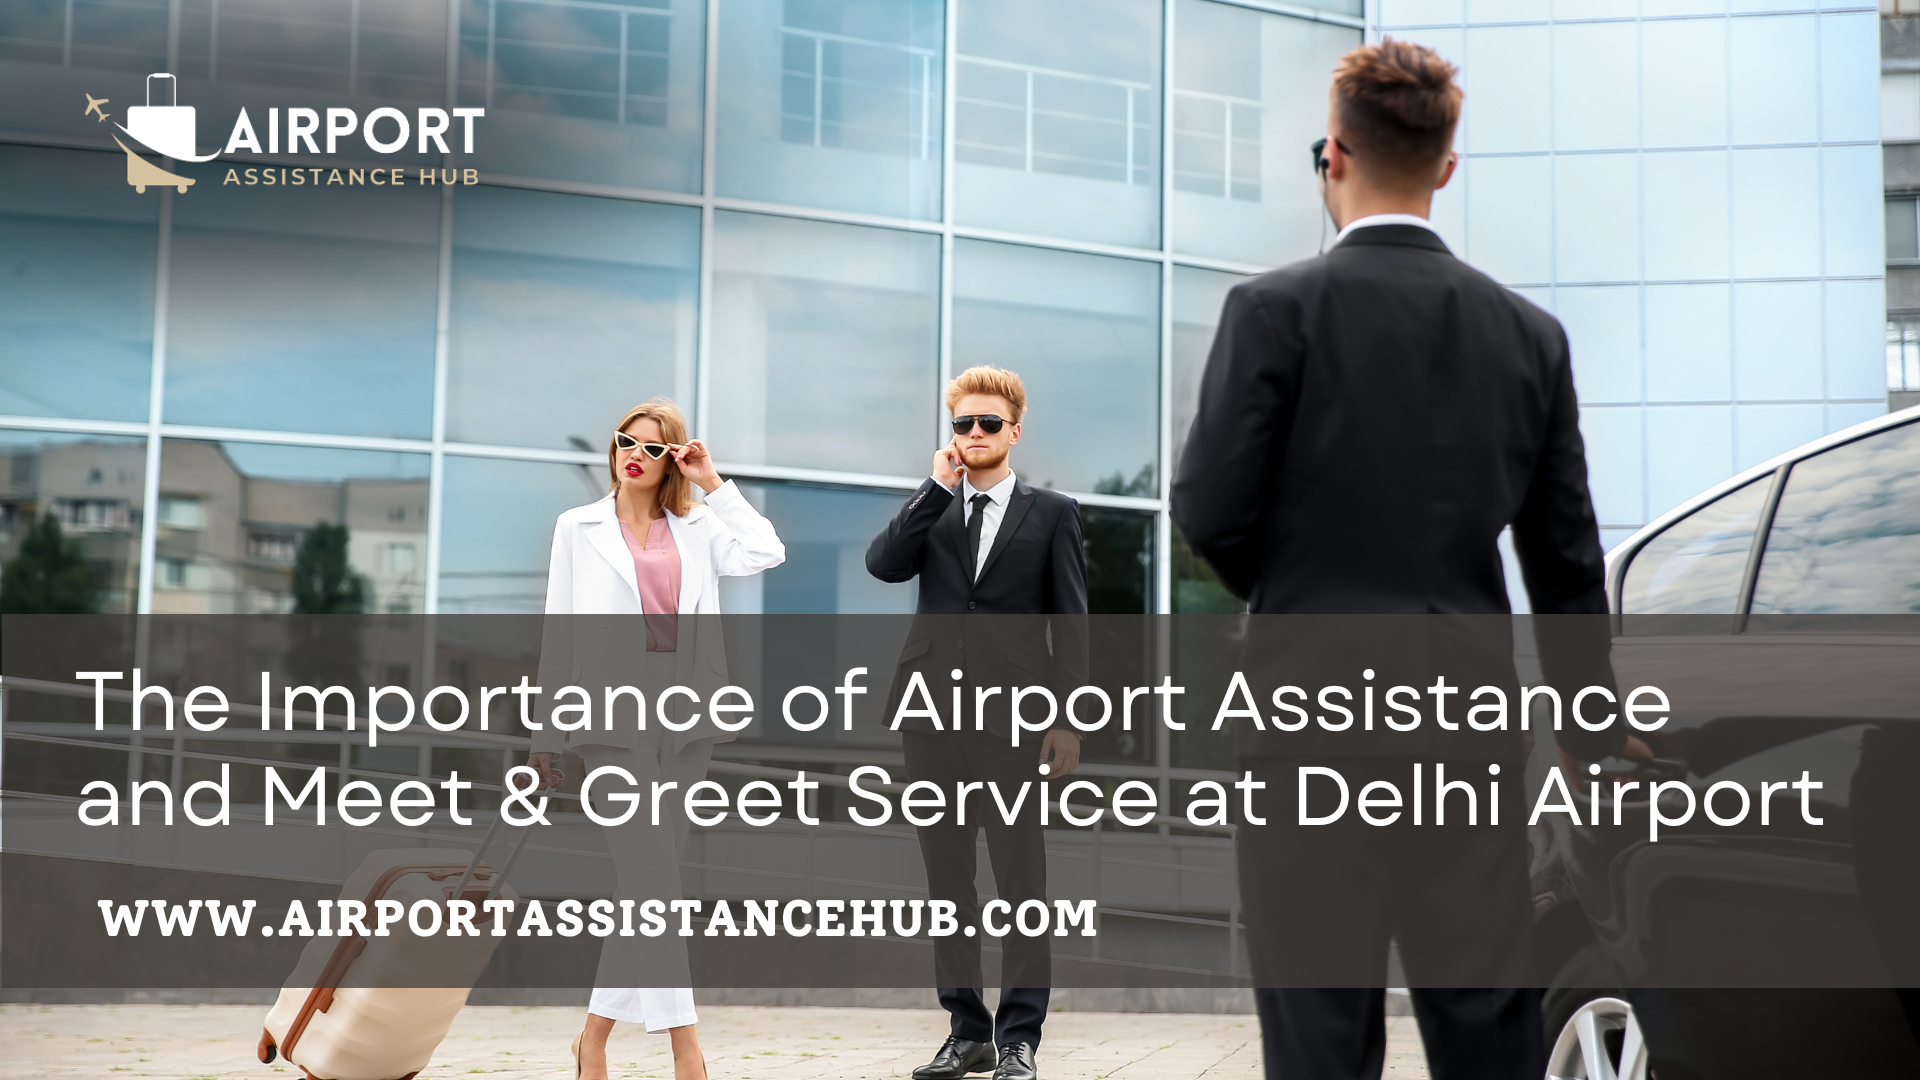 Delhi Airport Meet-and-Greet Service